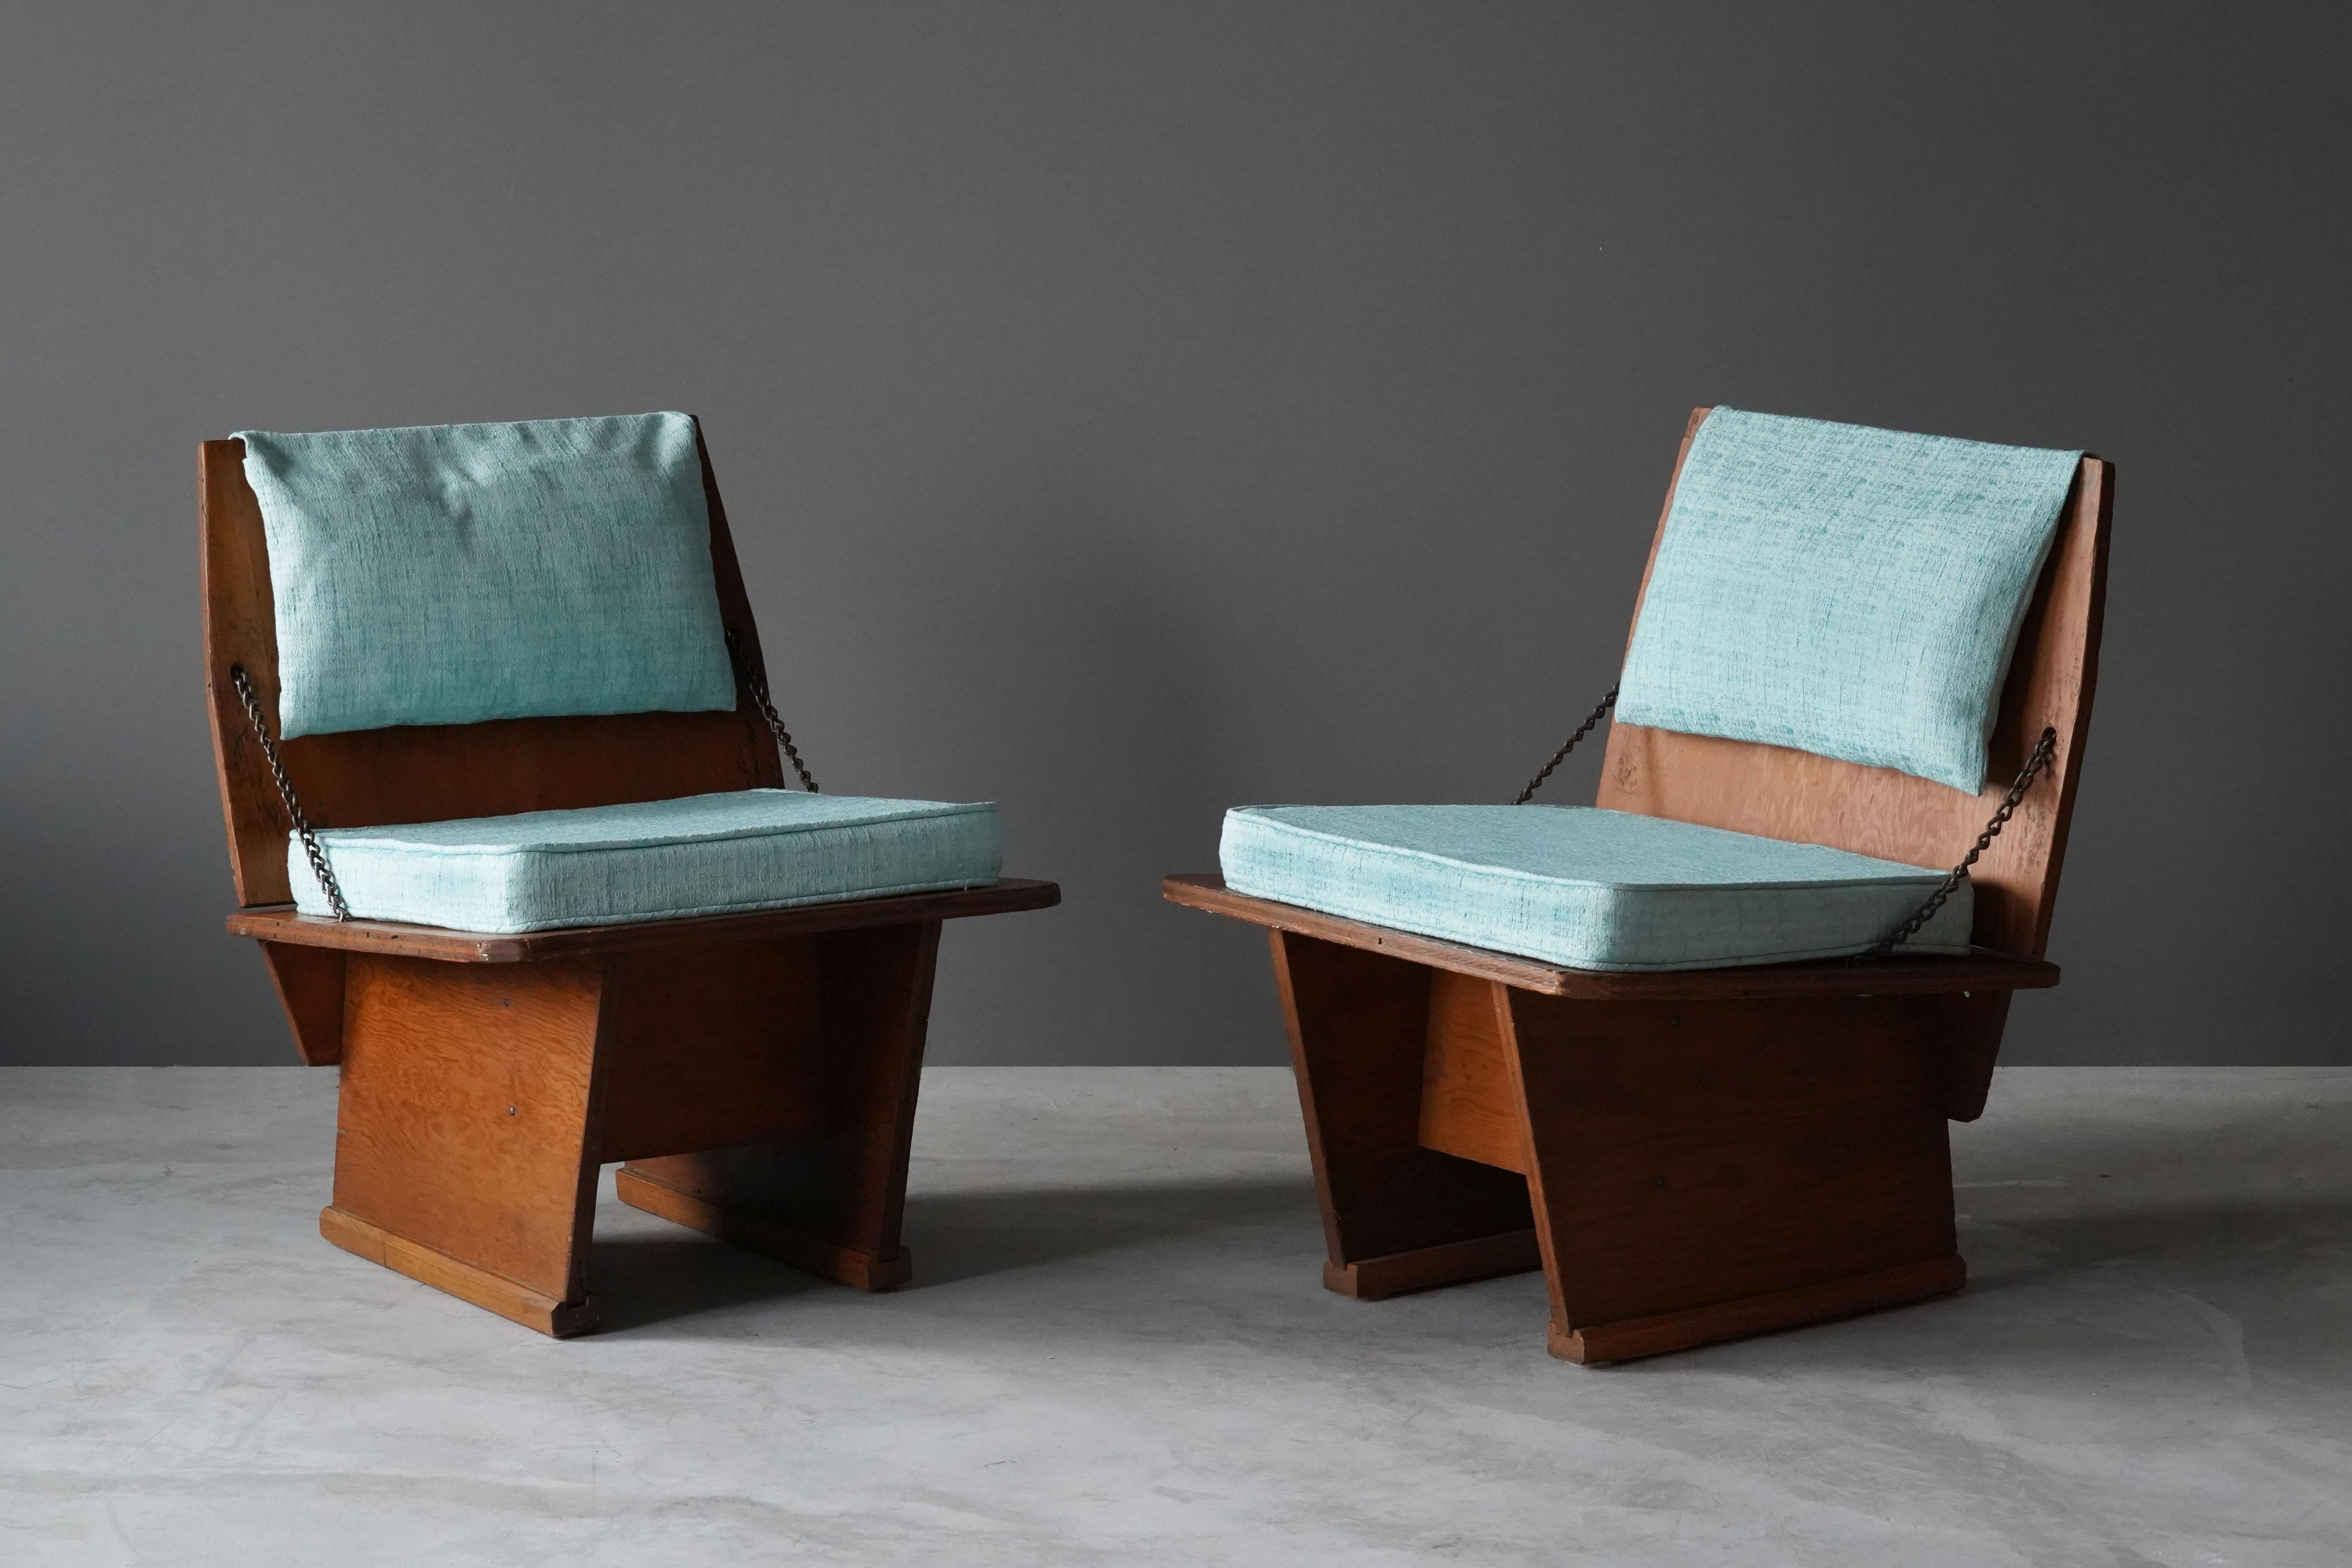 Ein seltenes Paar Loungesessel / Pantoffelstühle von Frank Lloyd Wright, hergestellt von seinem Taliesin Studio. Wurde 1951 in begrenzter Stückzahl für Lloyd Wrights berühmte Unitarierkirche hergestellt. Markiert. Der Kauf umfasst eine seltene